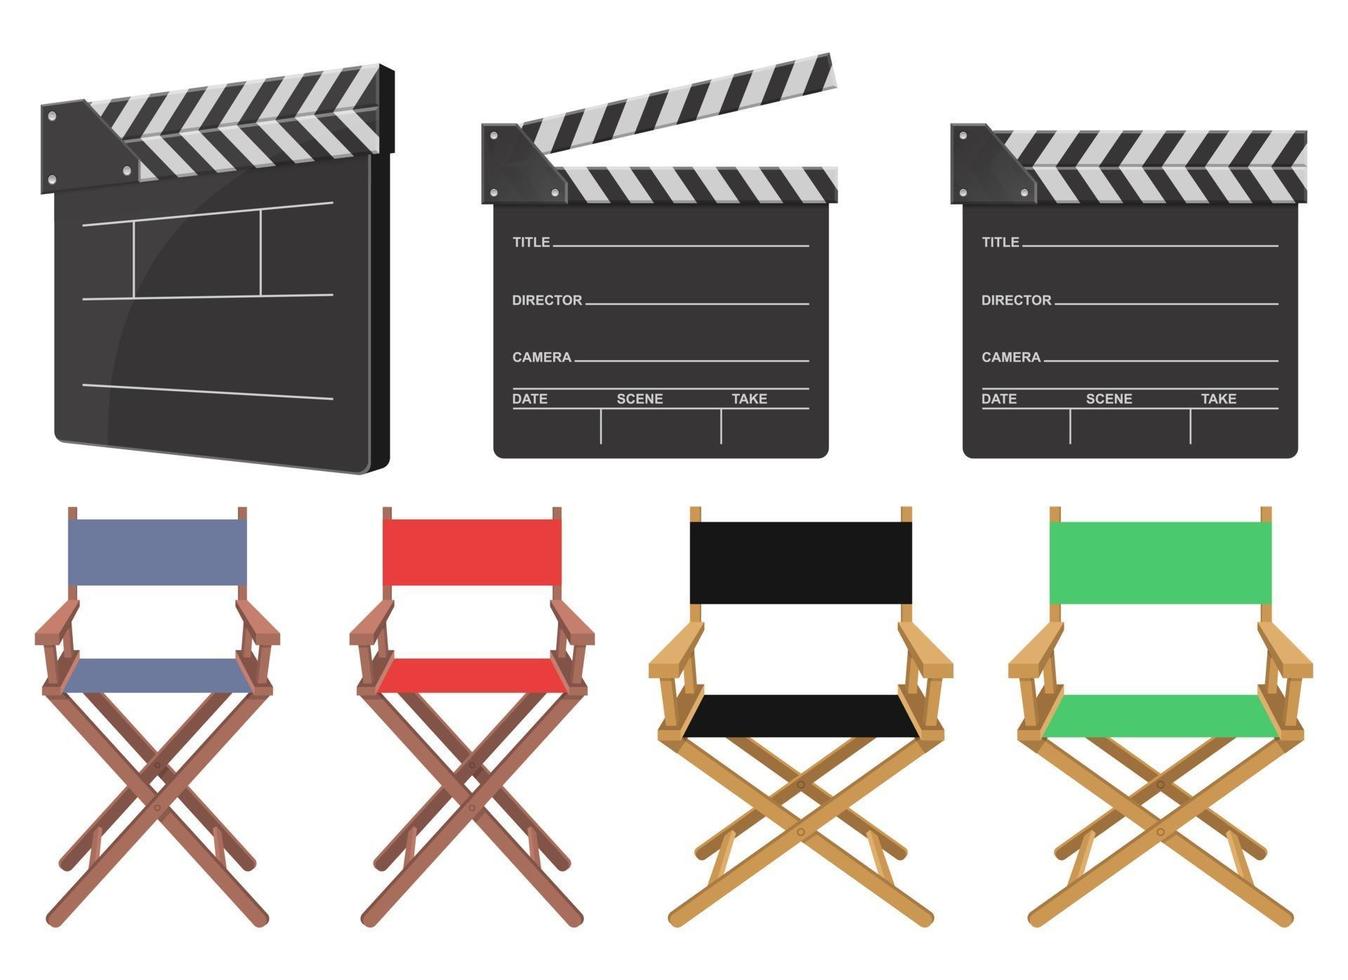 regisseur stoel en dakspaan vector ontwerp illustratie set geïsoleerd op een witte achtergrond